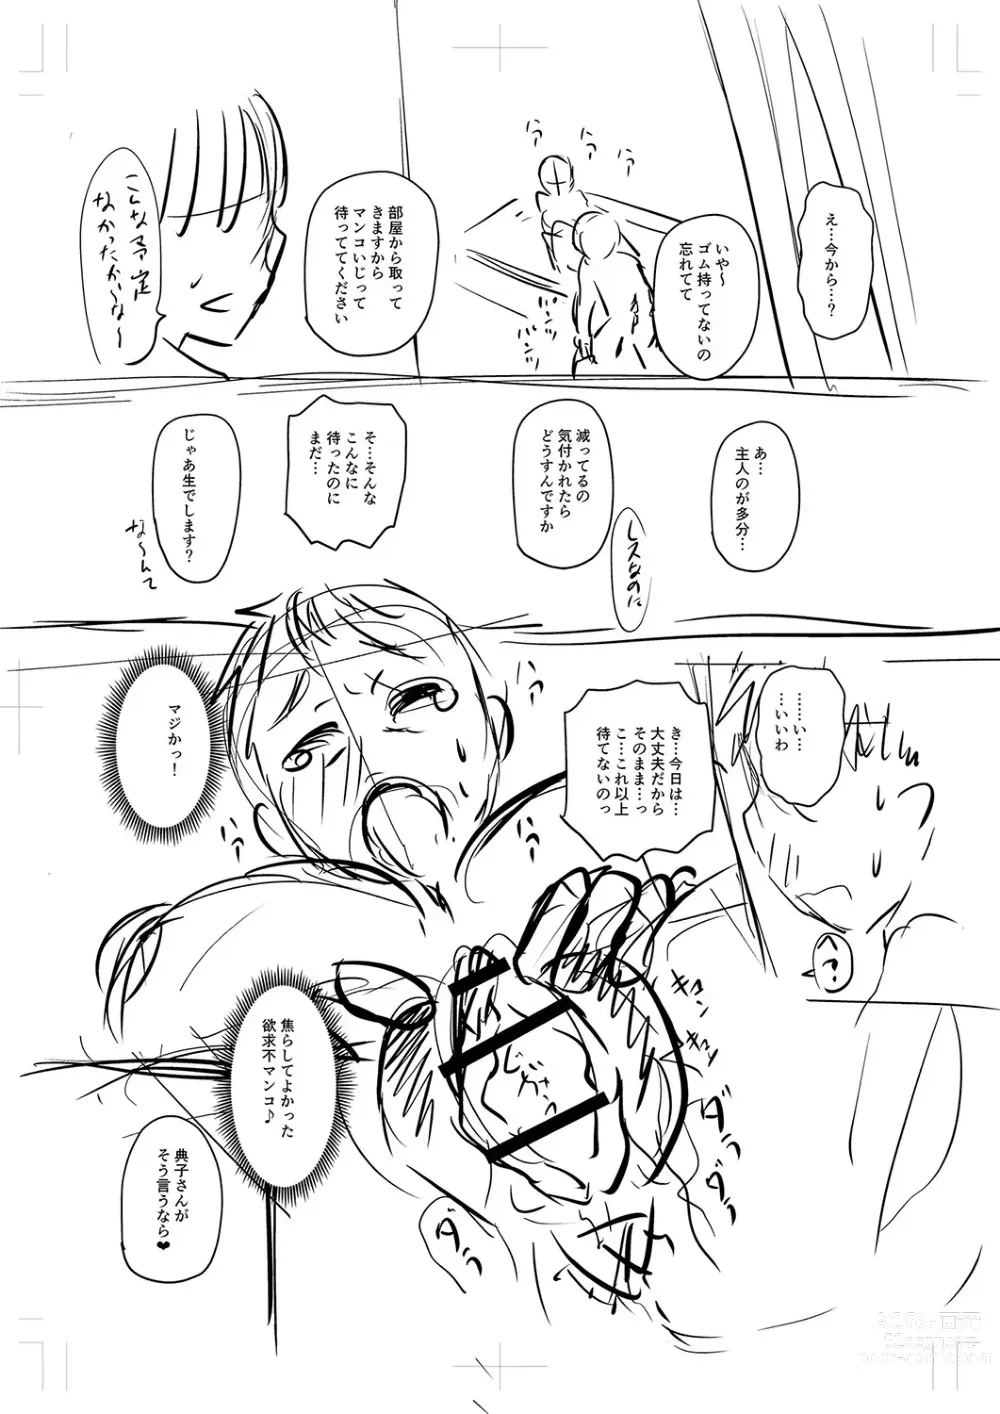 Page 394 of manga Tsuma demo Haha demo Nakunaru Hi